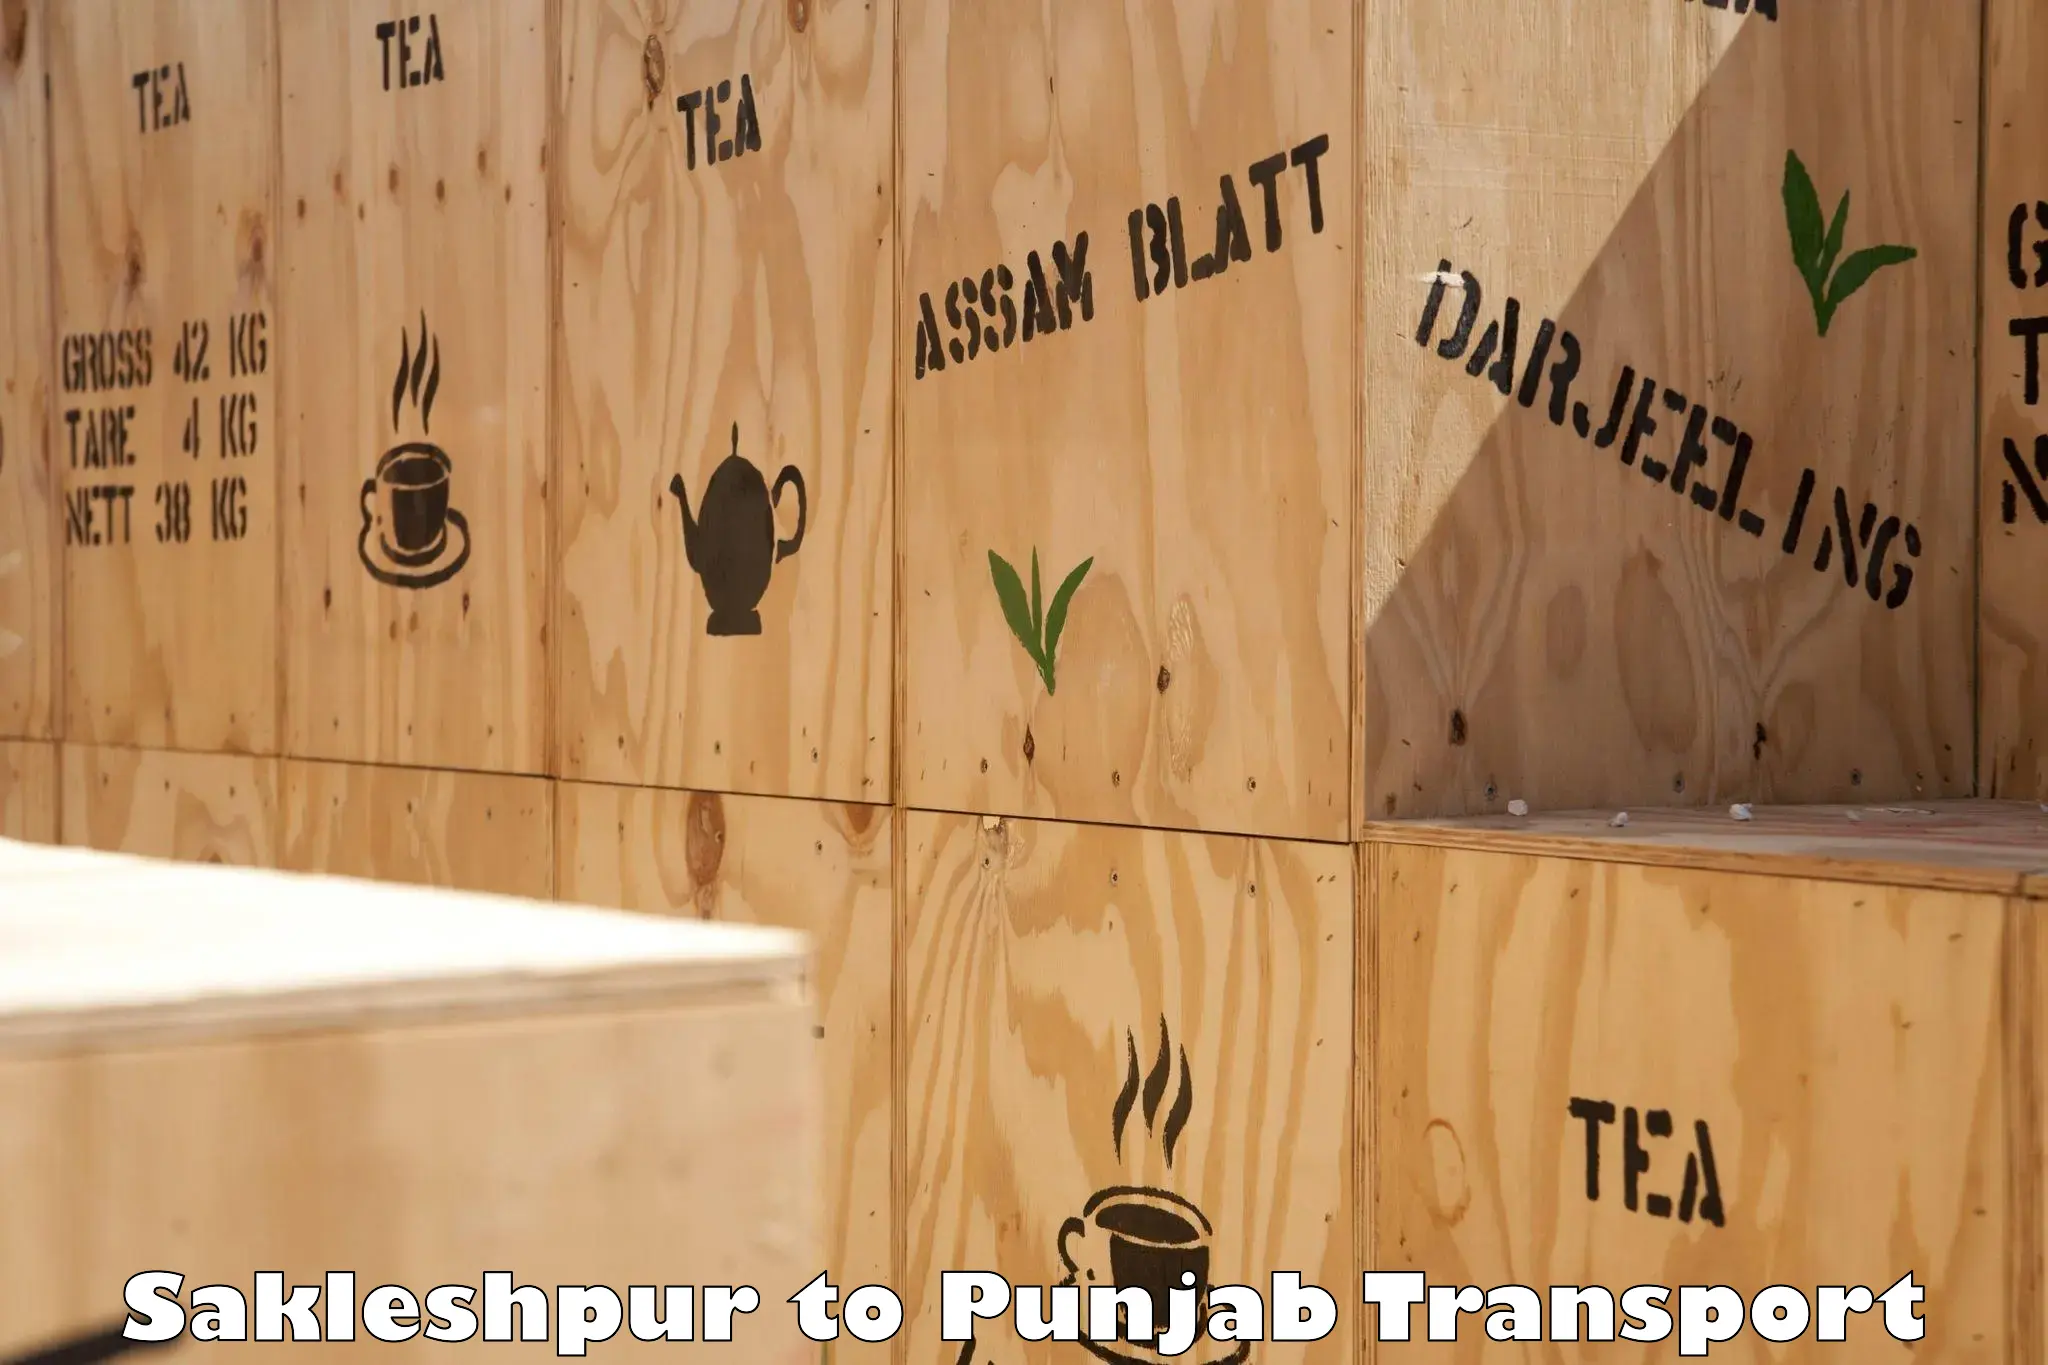 Interstate transport services Sakleshpur to Sultanpur Lodhi